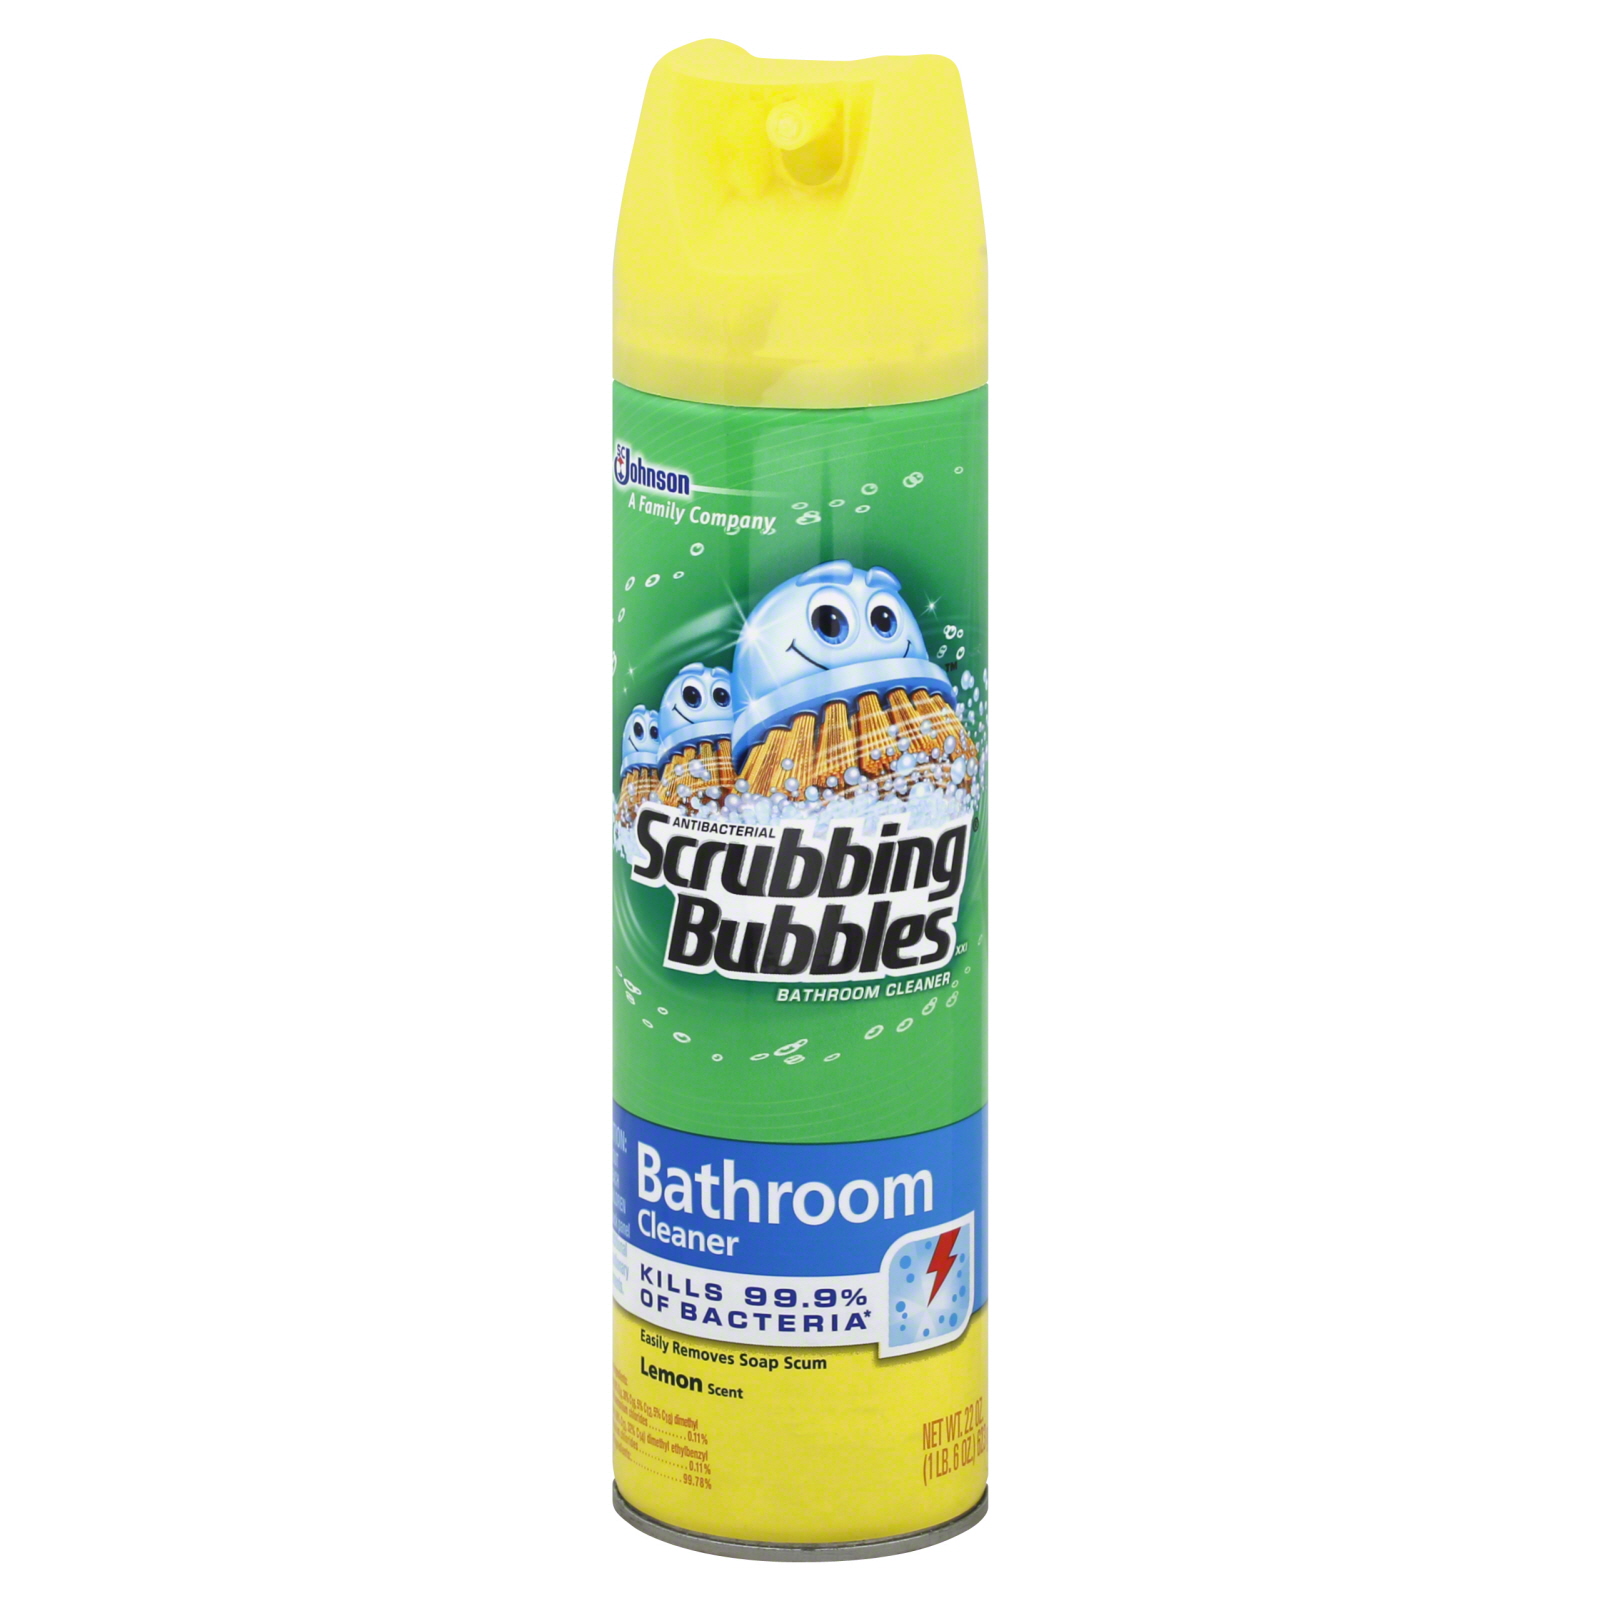 Scrubbing Bubbles Bathroom Cleaner, Lemon Scent, 22 oz (1 lb 6 oz) 623 g